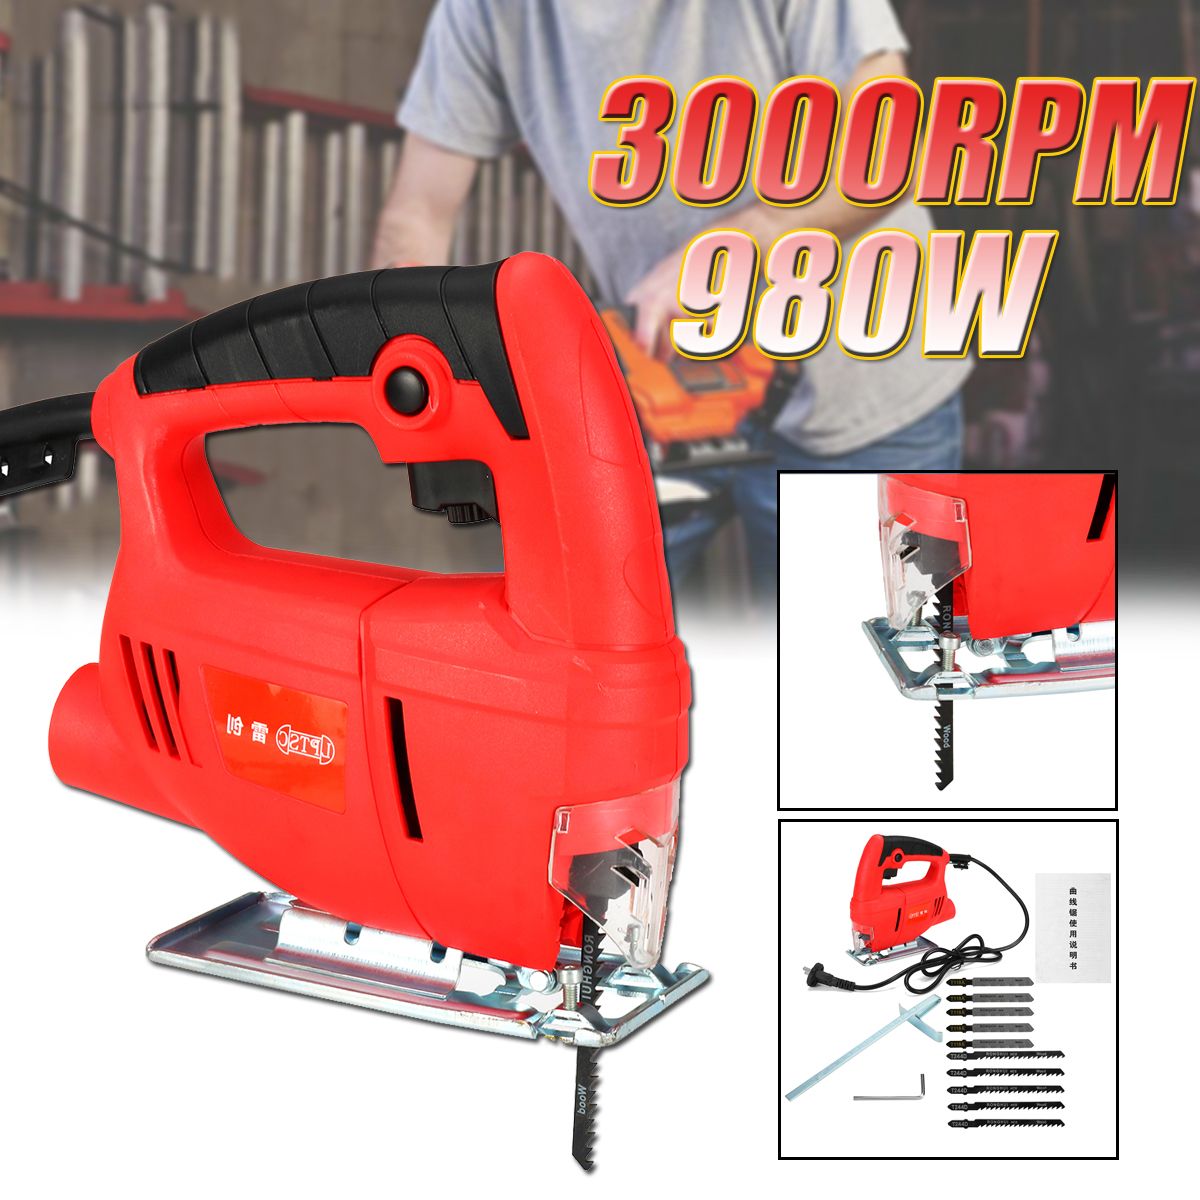 220V-980W-Electric-Jigsaw-Jig-Saw-amp-Wood-Metal-Plastic-Cutting-Blade-DIY-Woodworking-Tool-1728461